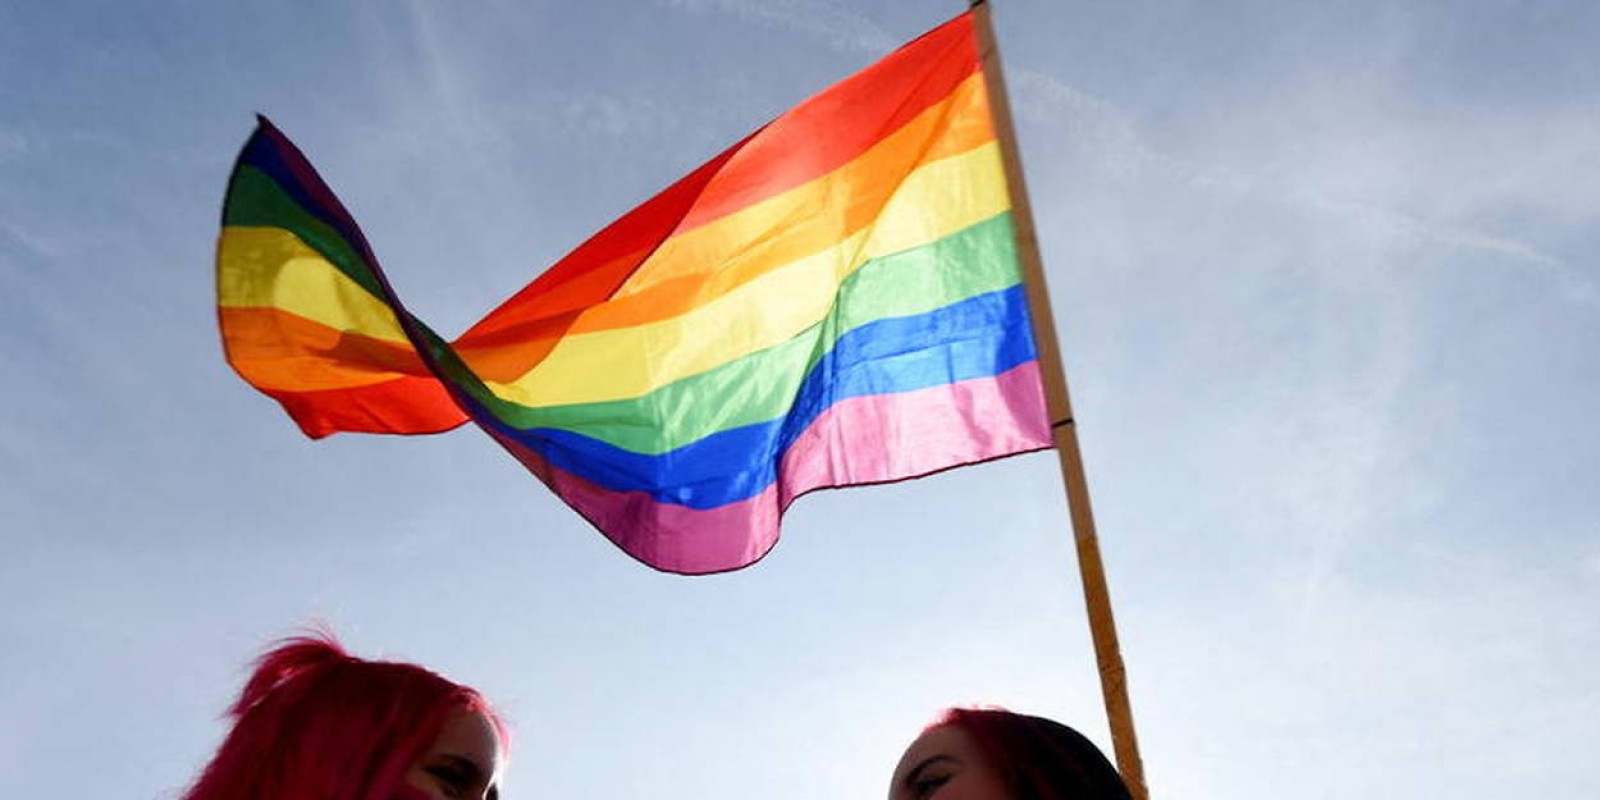 Centres LGBT vandalisés, des associations LGBT demandent la protection d'État